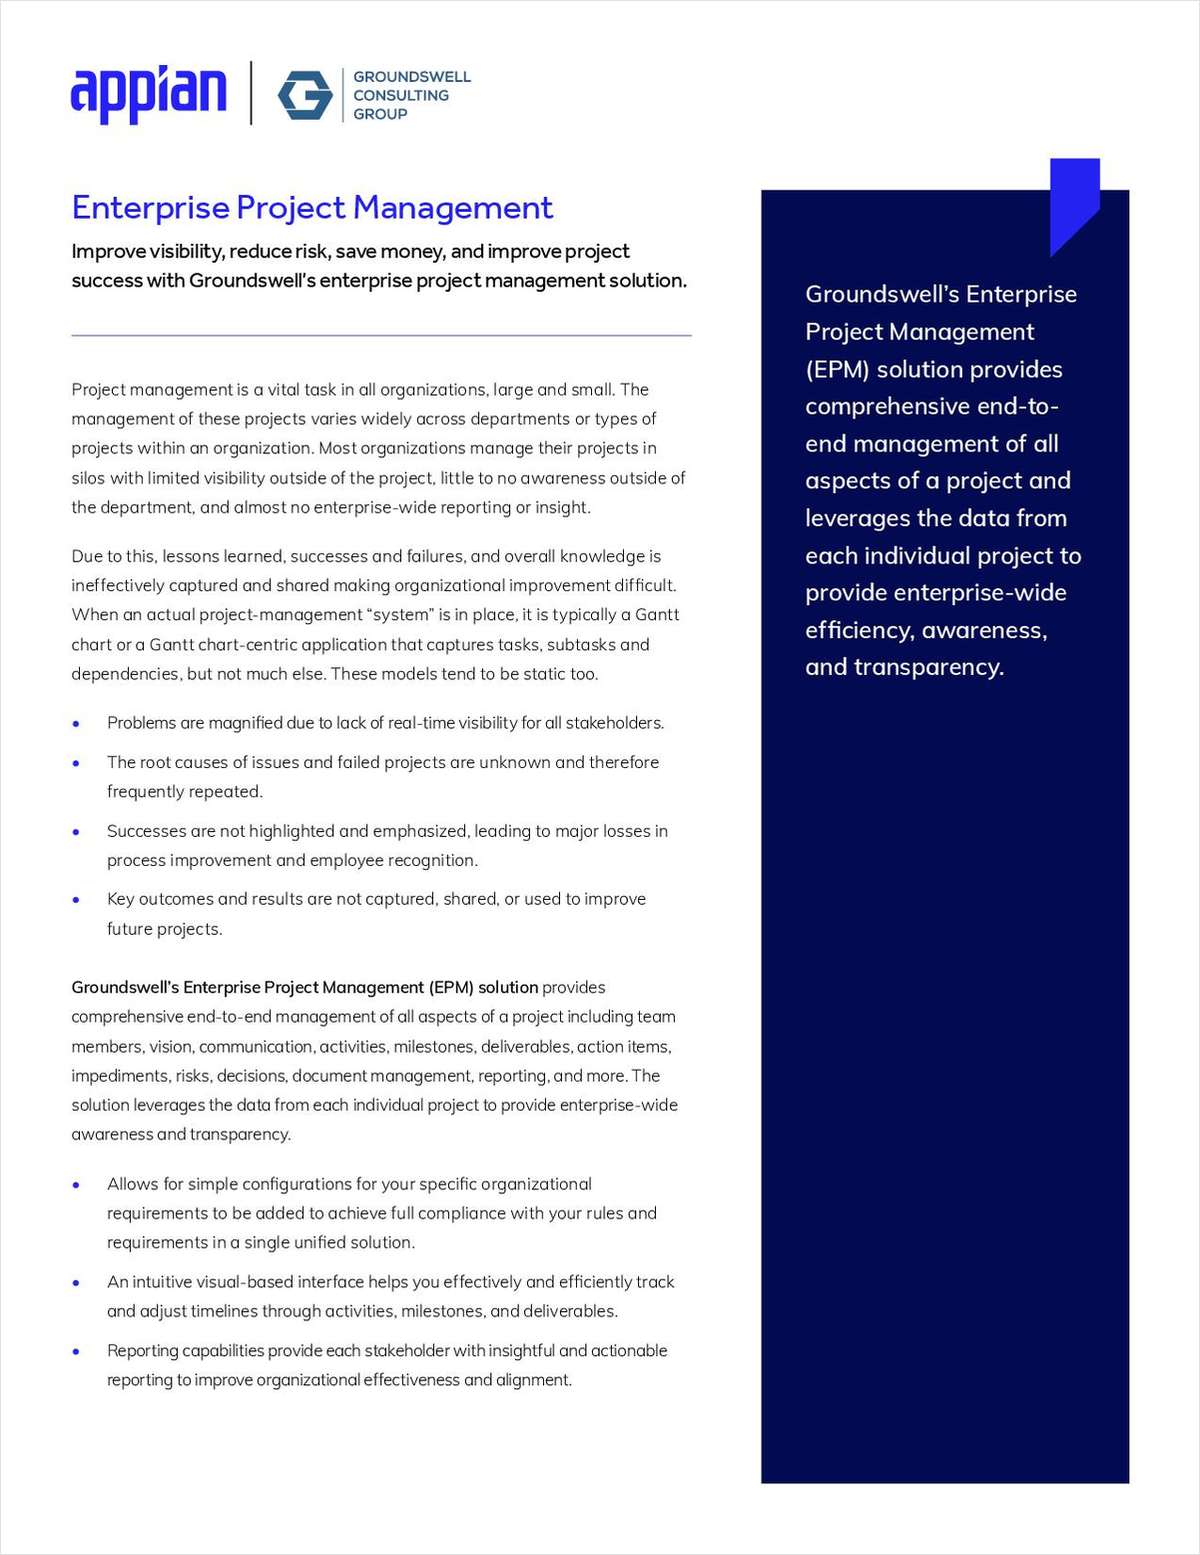 Enterprise Project Management Solution